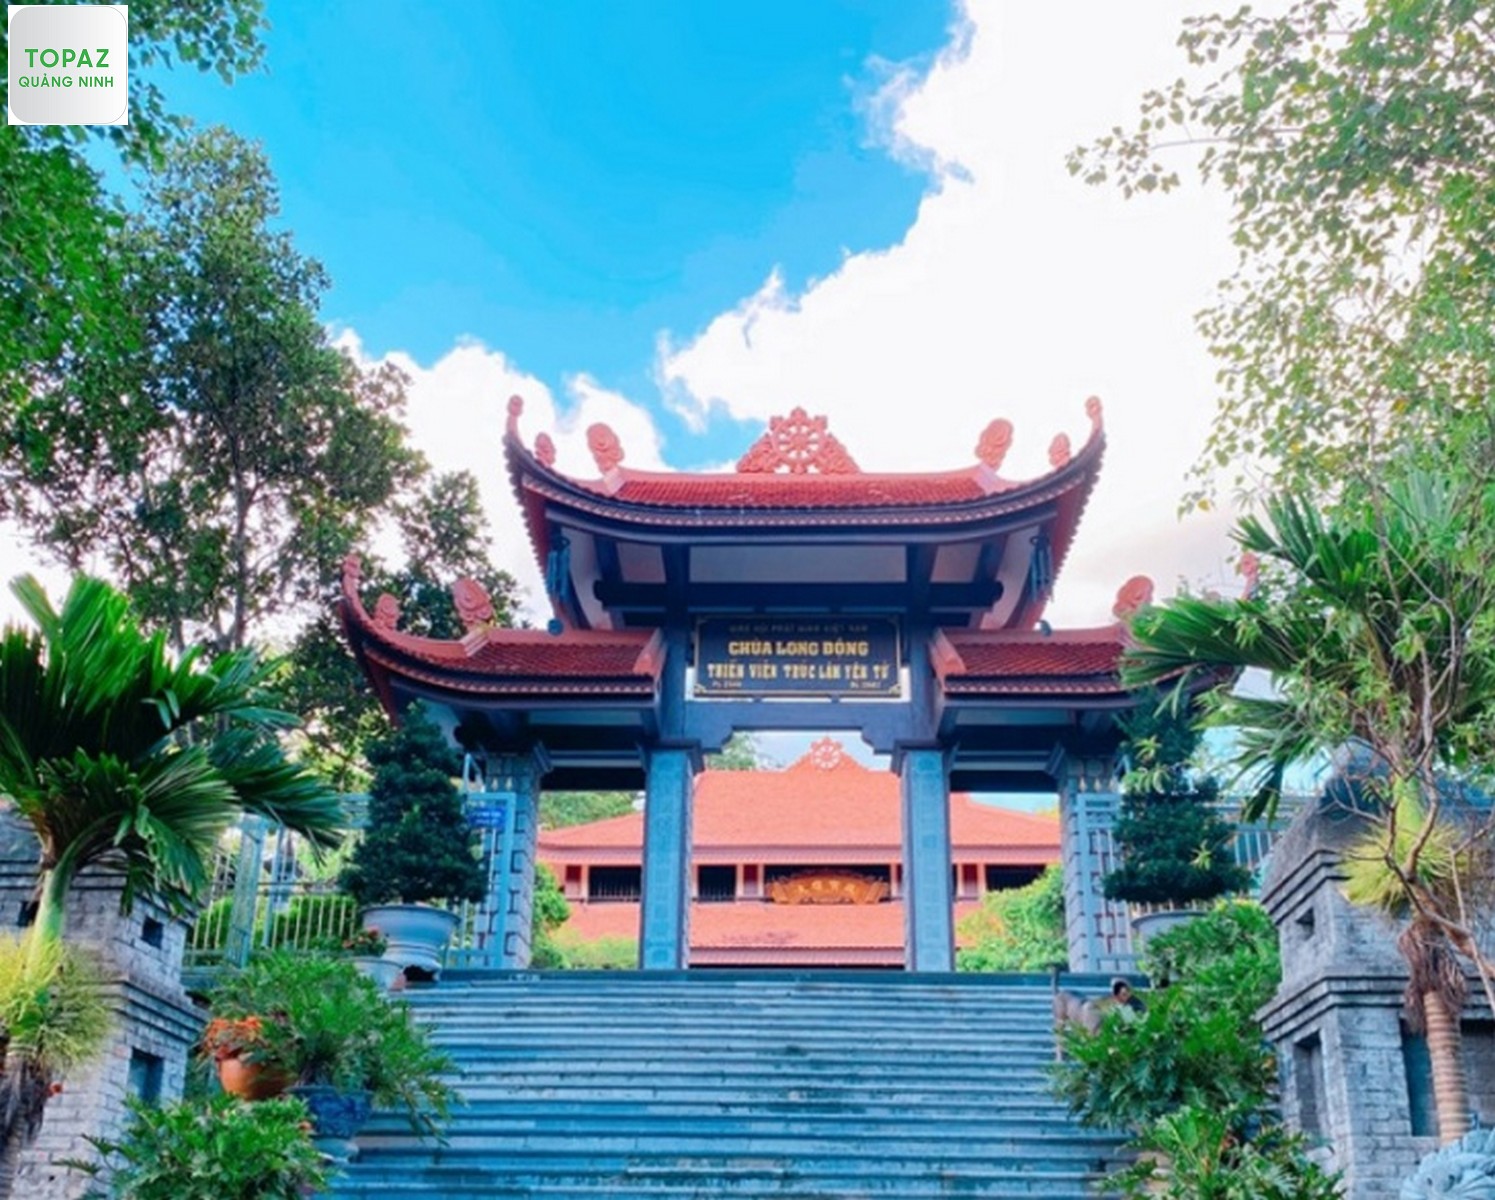 Tam quan ghi “Chùa Long Động – Thiền viện Trúc Lâm Yên Tử”